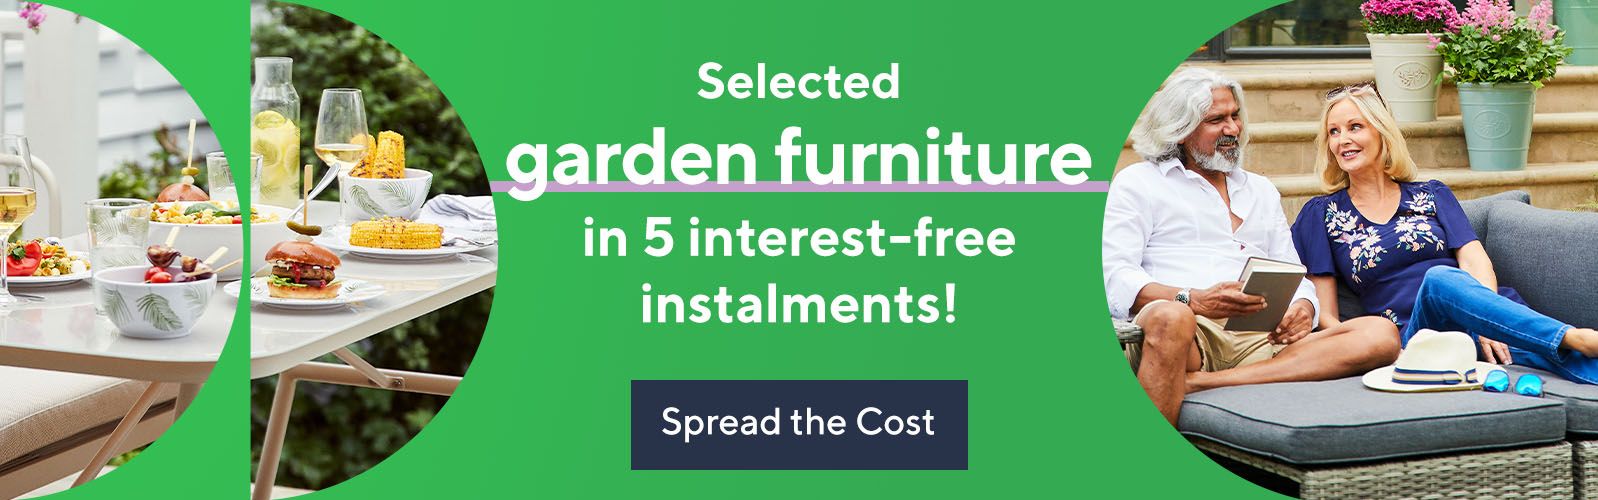 Garden furniture in interest-free instalments